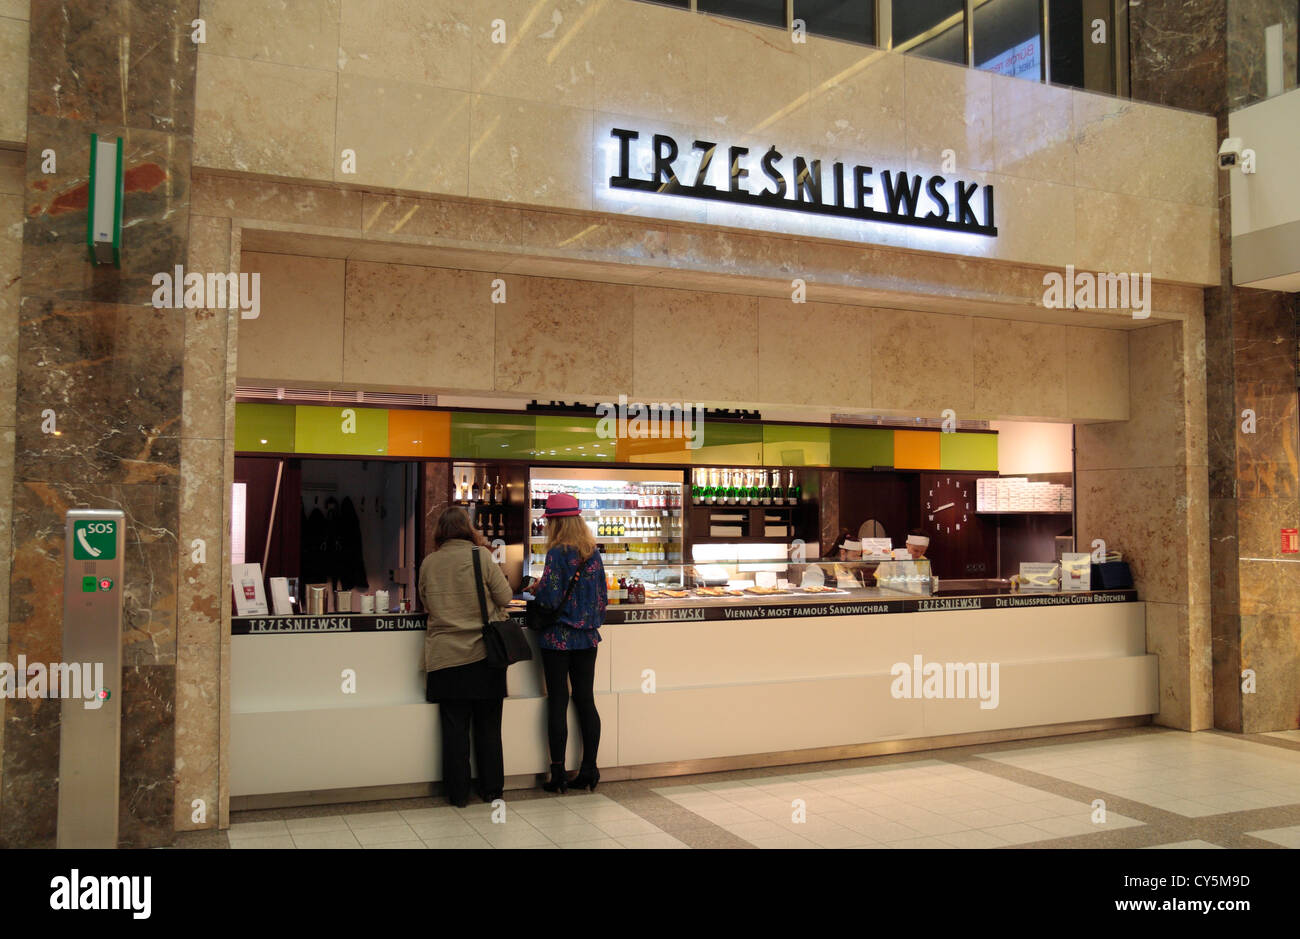 The Trzesniewski sandwich counter in the Wien Westbahnhof (Vienna Western  Station) Vienna, Austria Stock Photo - Alamy